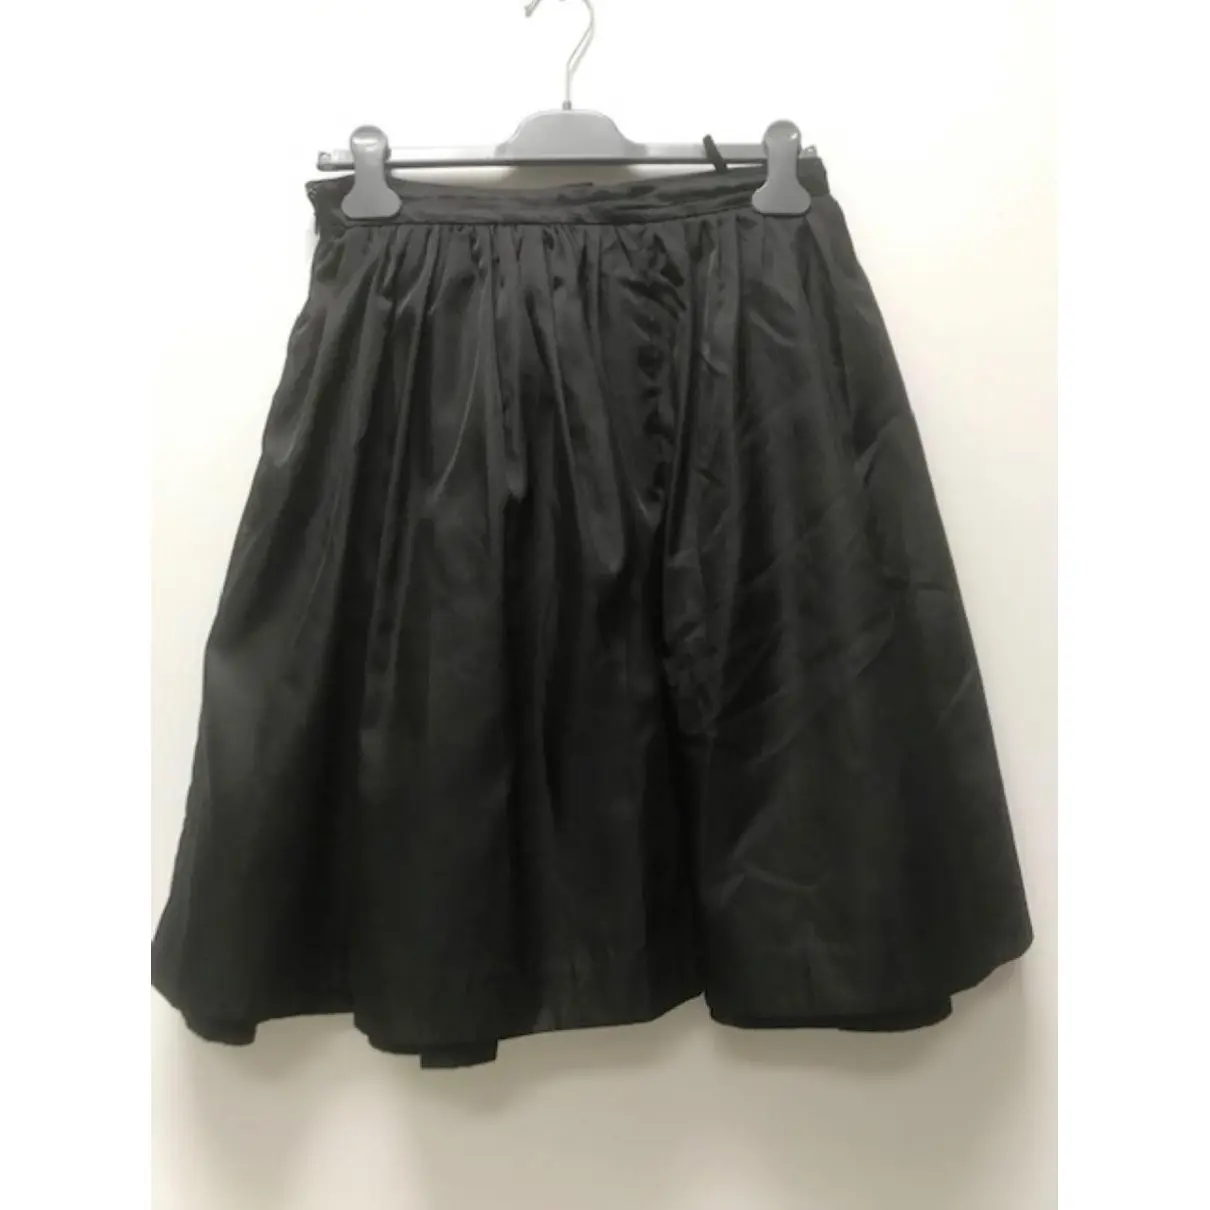 Buy Prada Skirt online